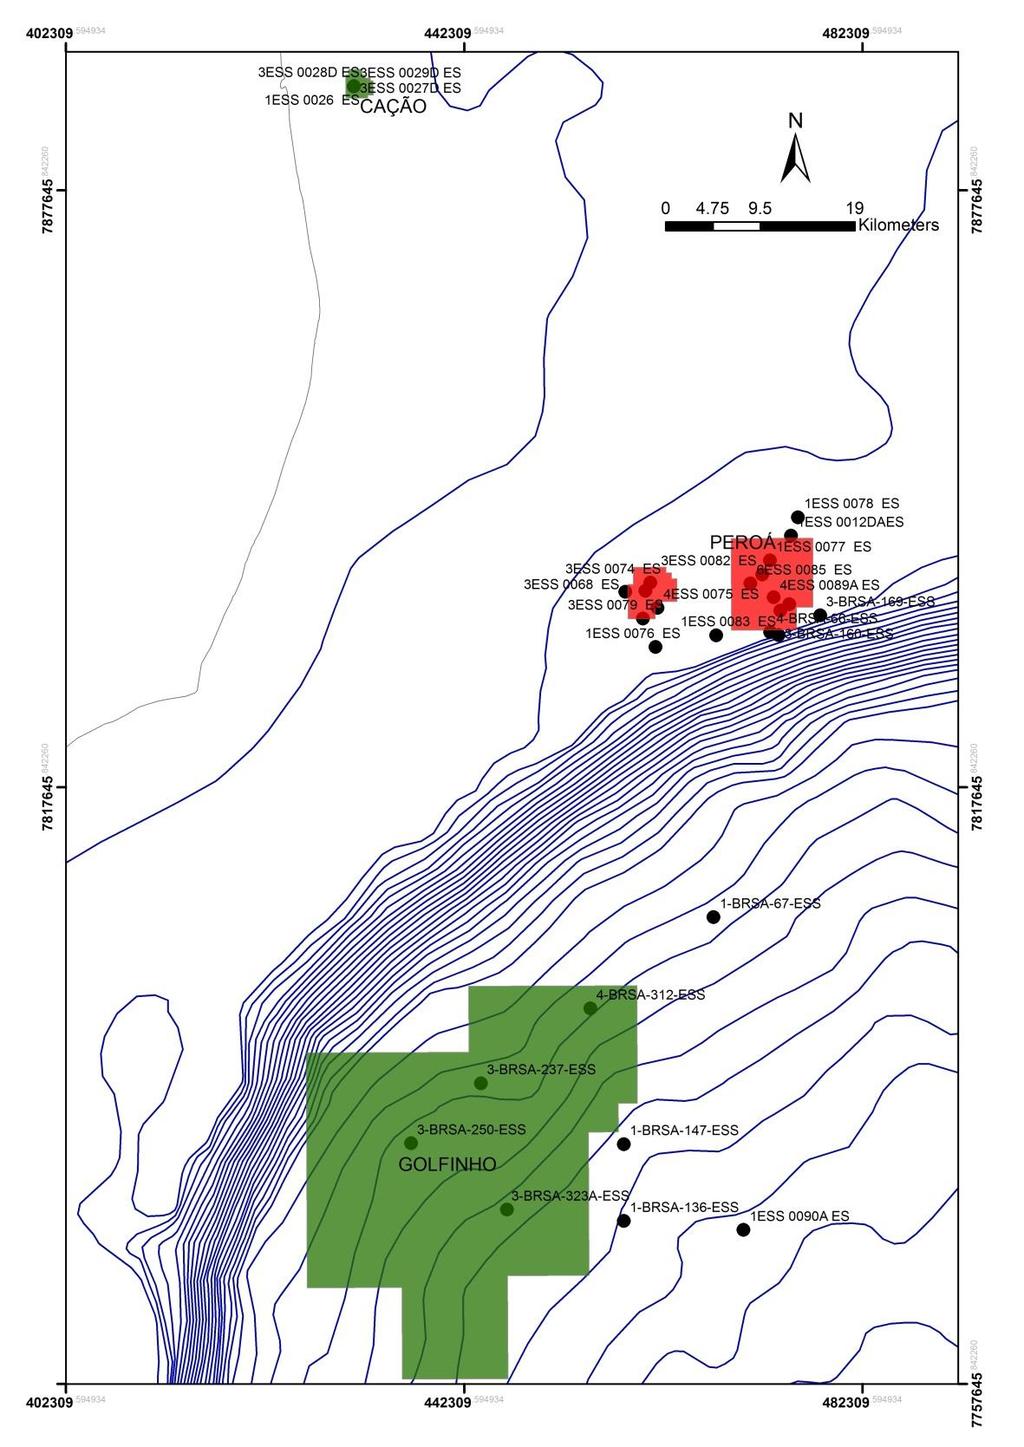 43 A Figura 22 mostra a disposição dos poços que foram caracterizados em relação aos campos de petróleo.